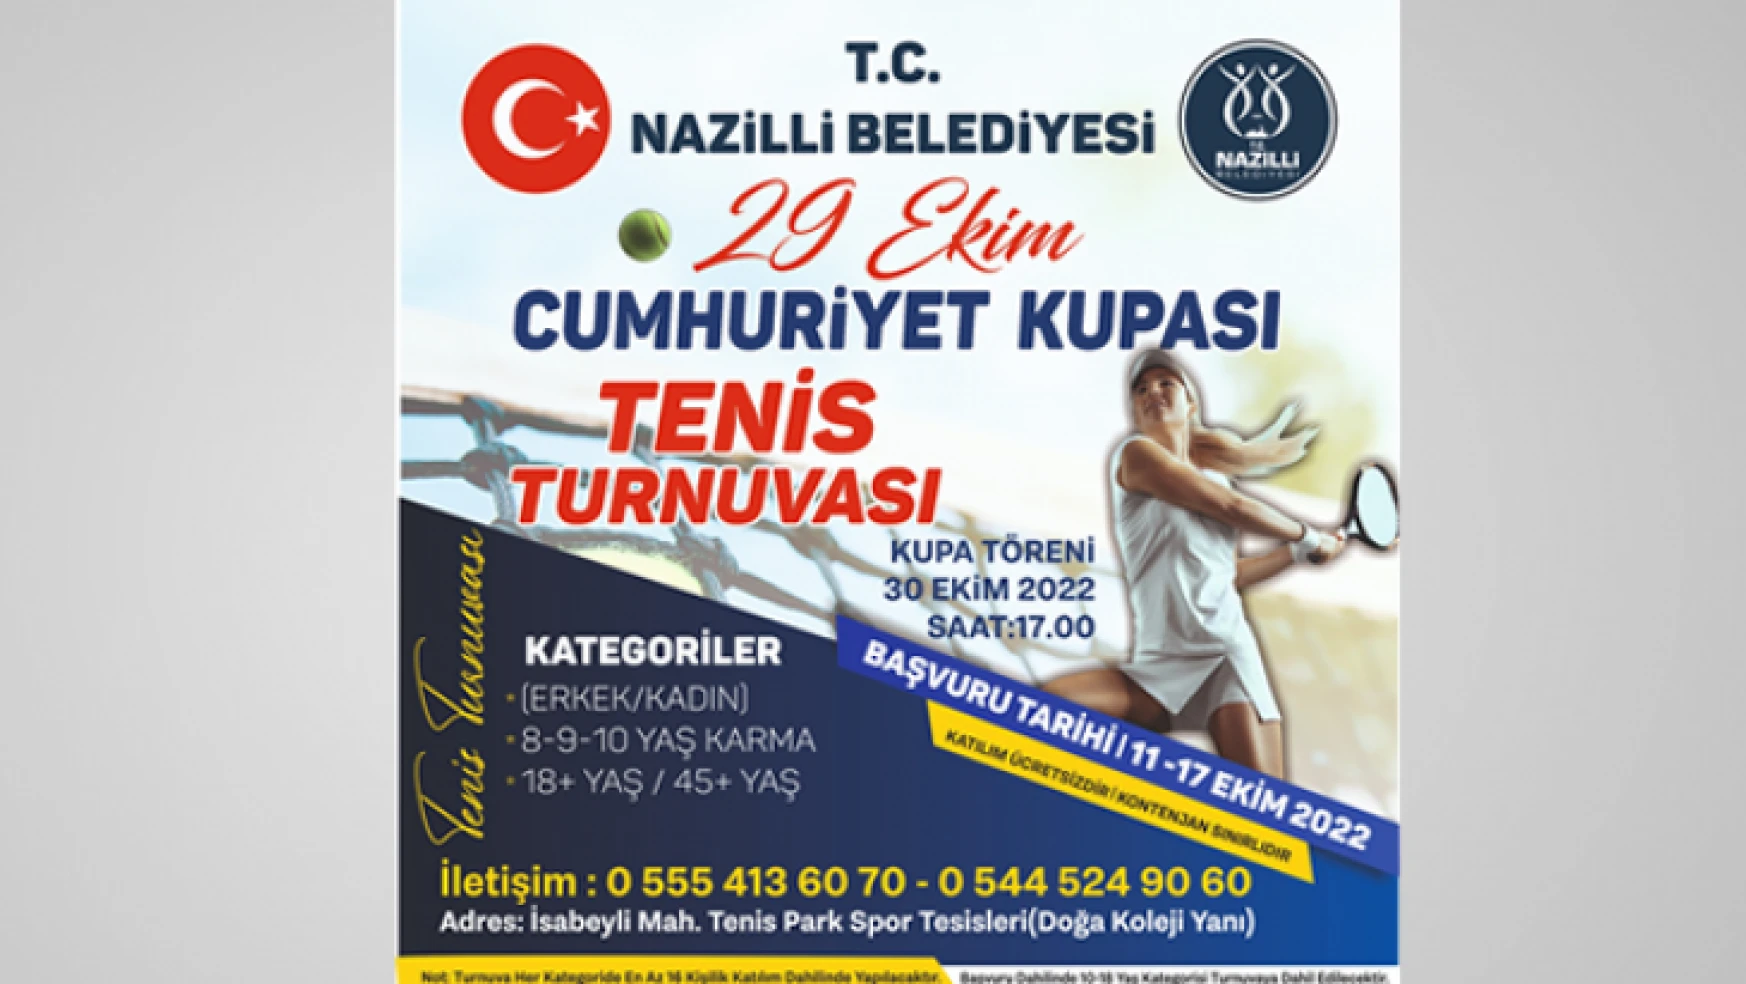 Nazilli'de 'Cumhuriyet Kupası Tenis Turnuvası' yapılacak